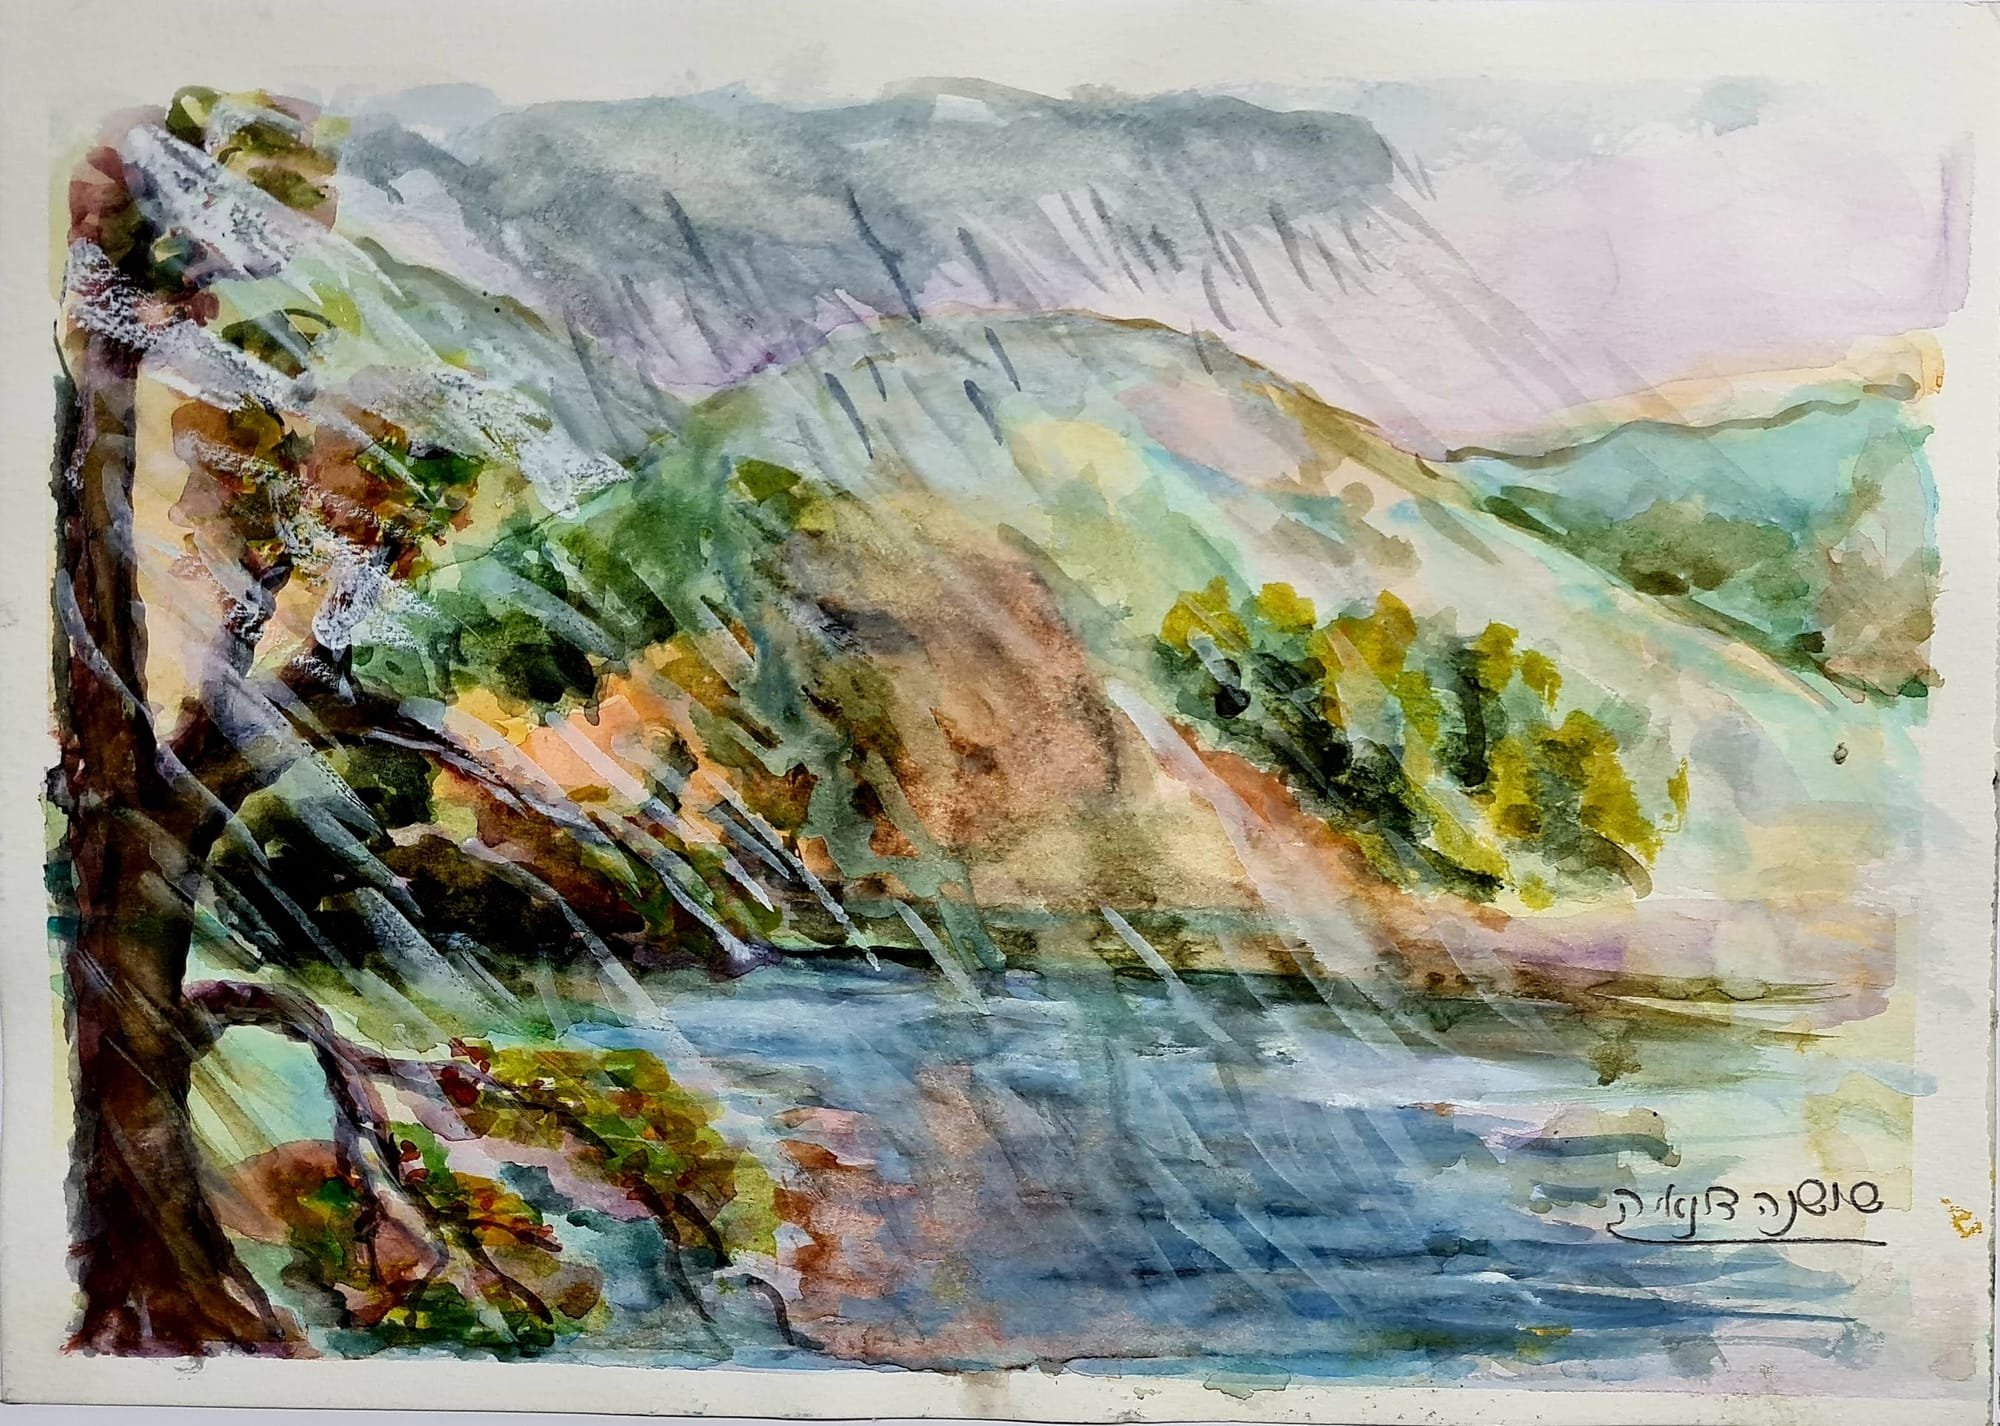 ציור מס. 46 - "גשם על האגם"